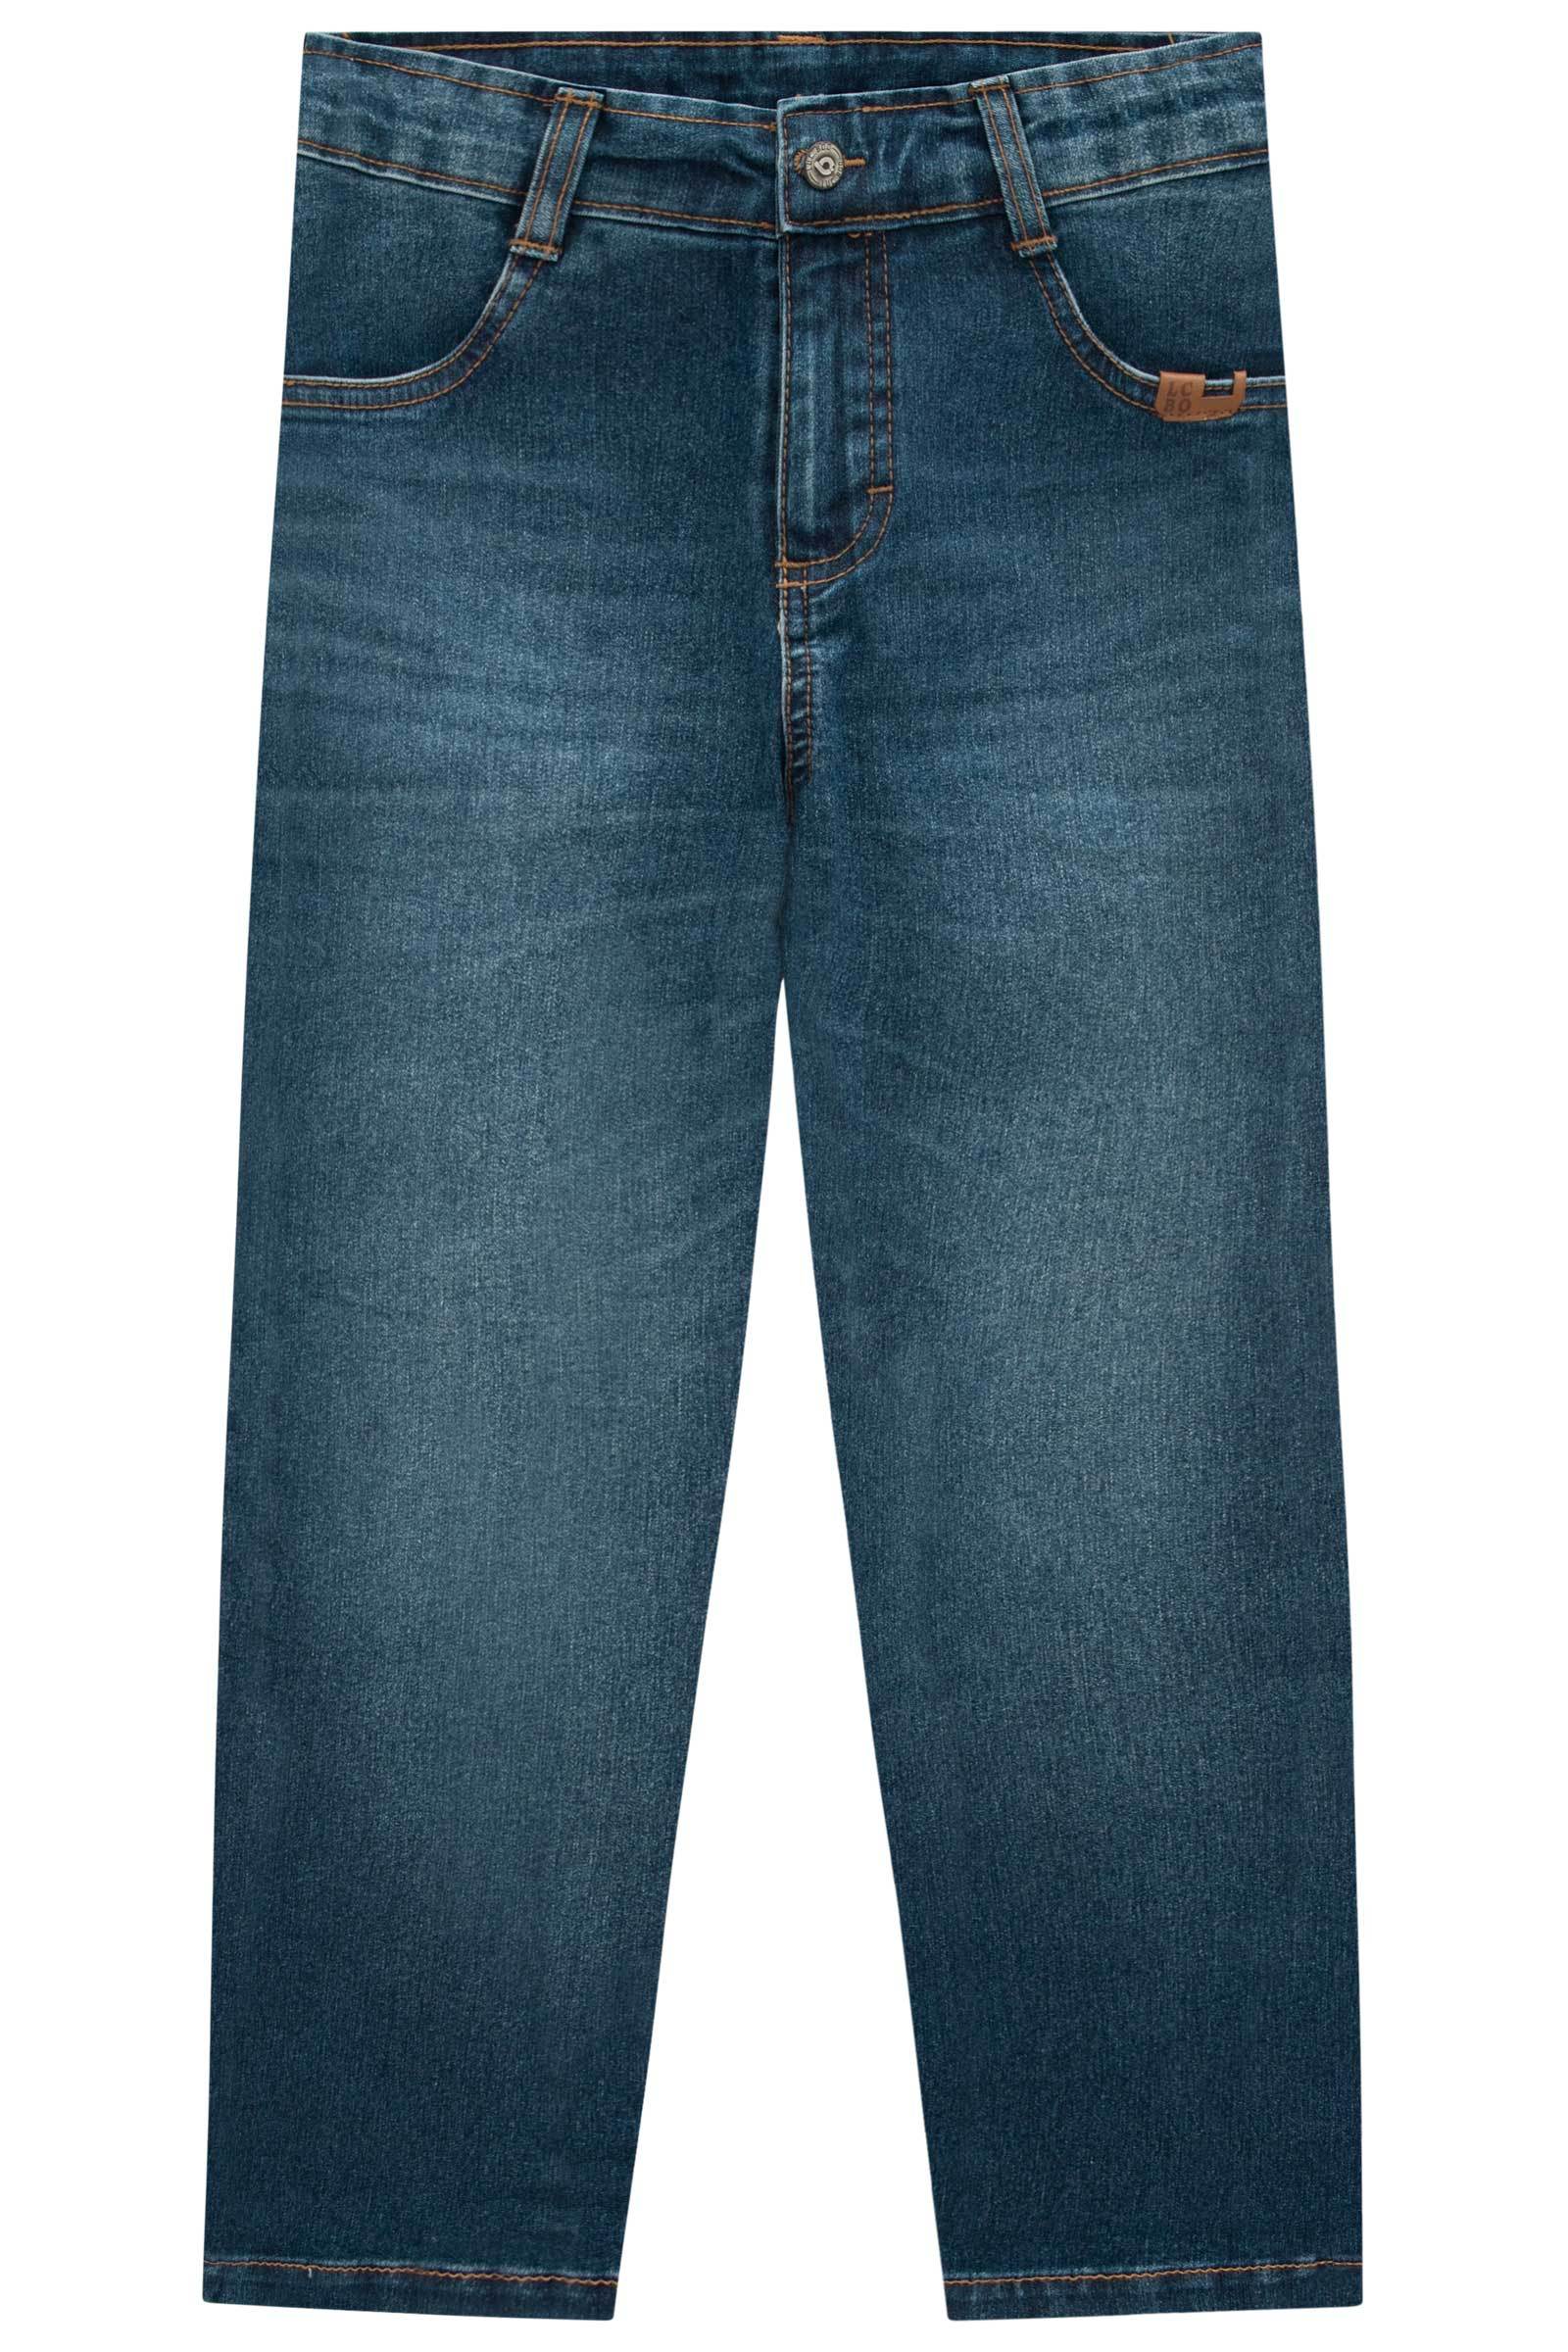 Calça Skinny em Jeans Bellini com Elastano 70506 LucBoo